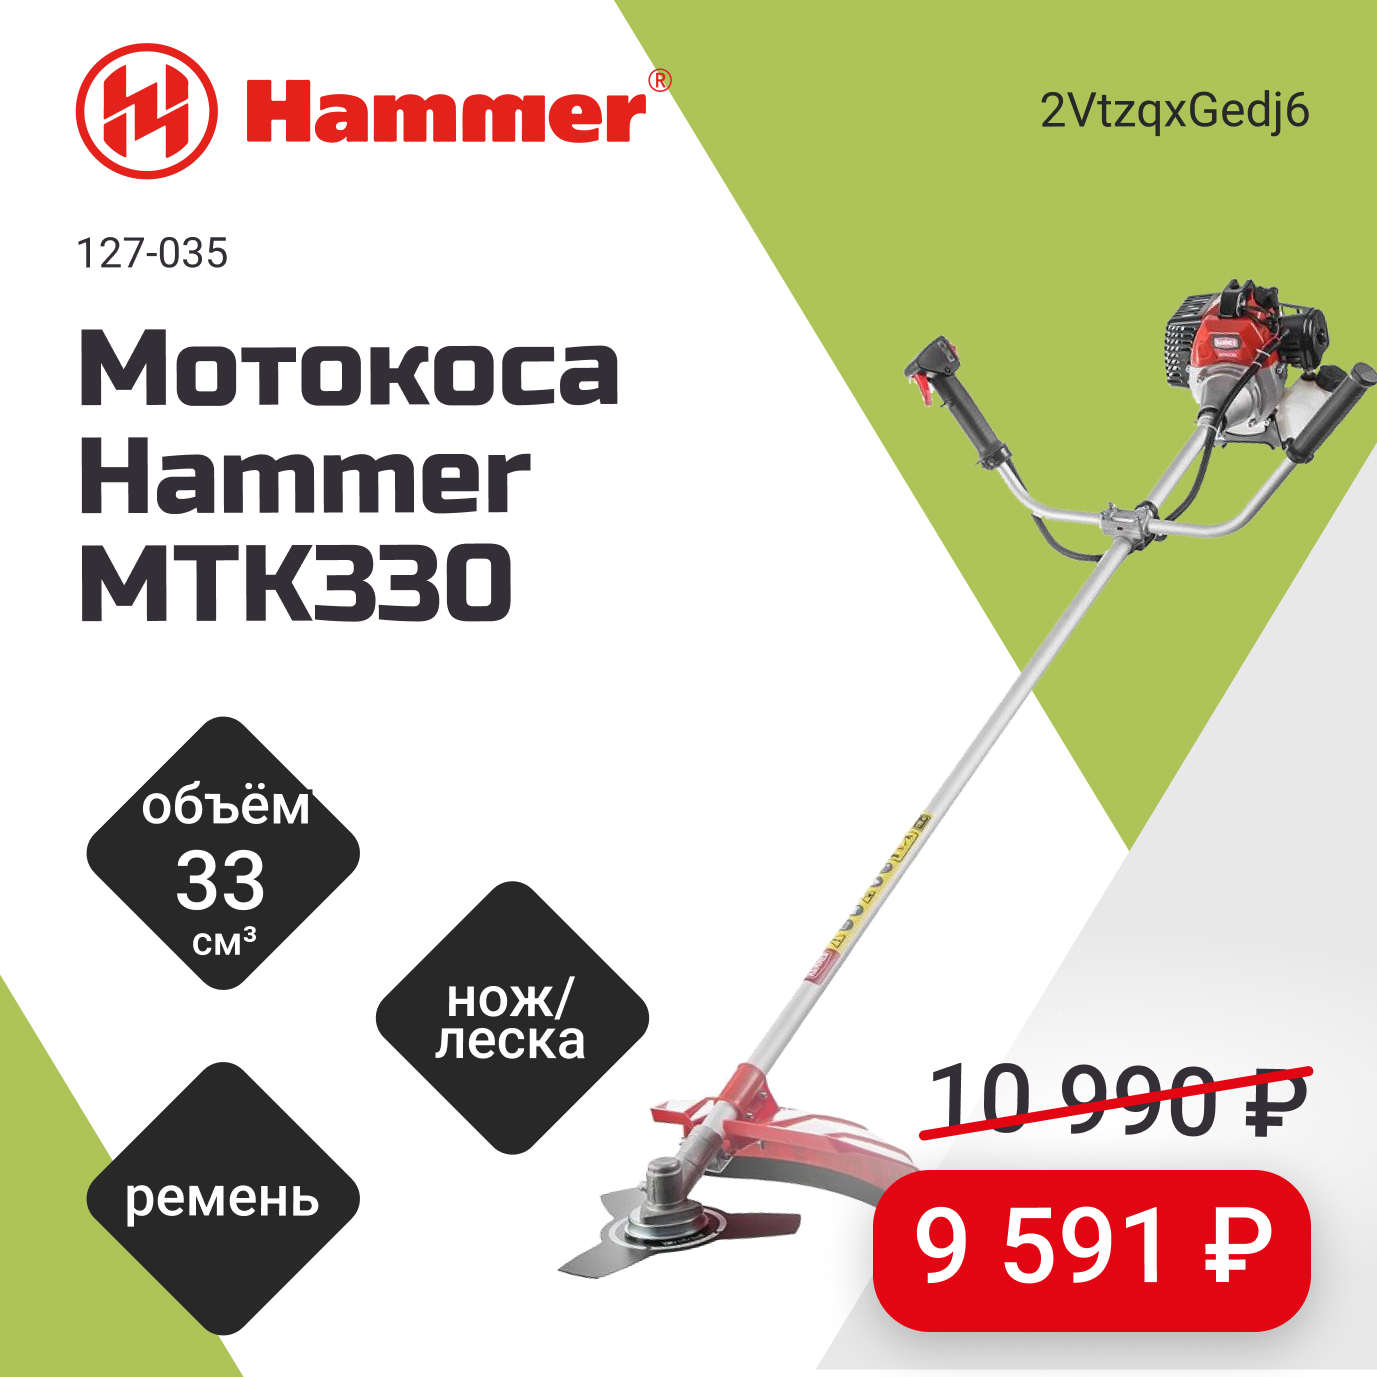 Мотокоса Hammer MTK330 всего за 9 591 рубль!